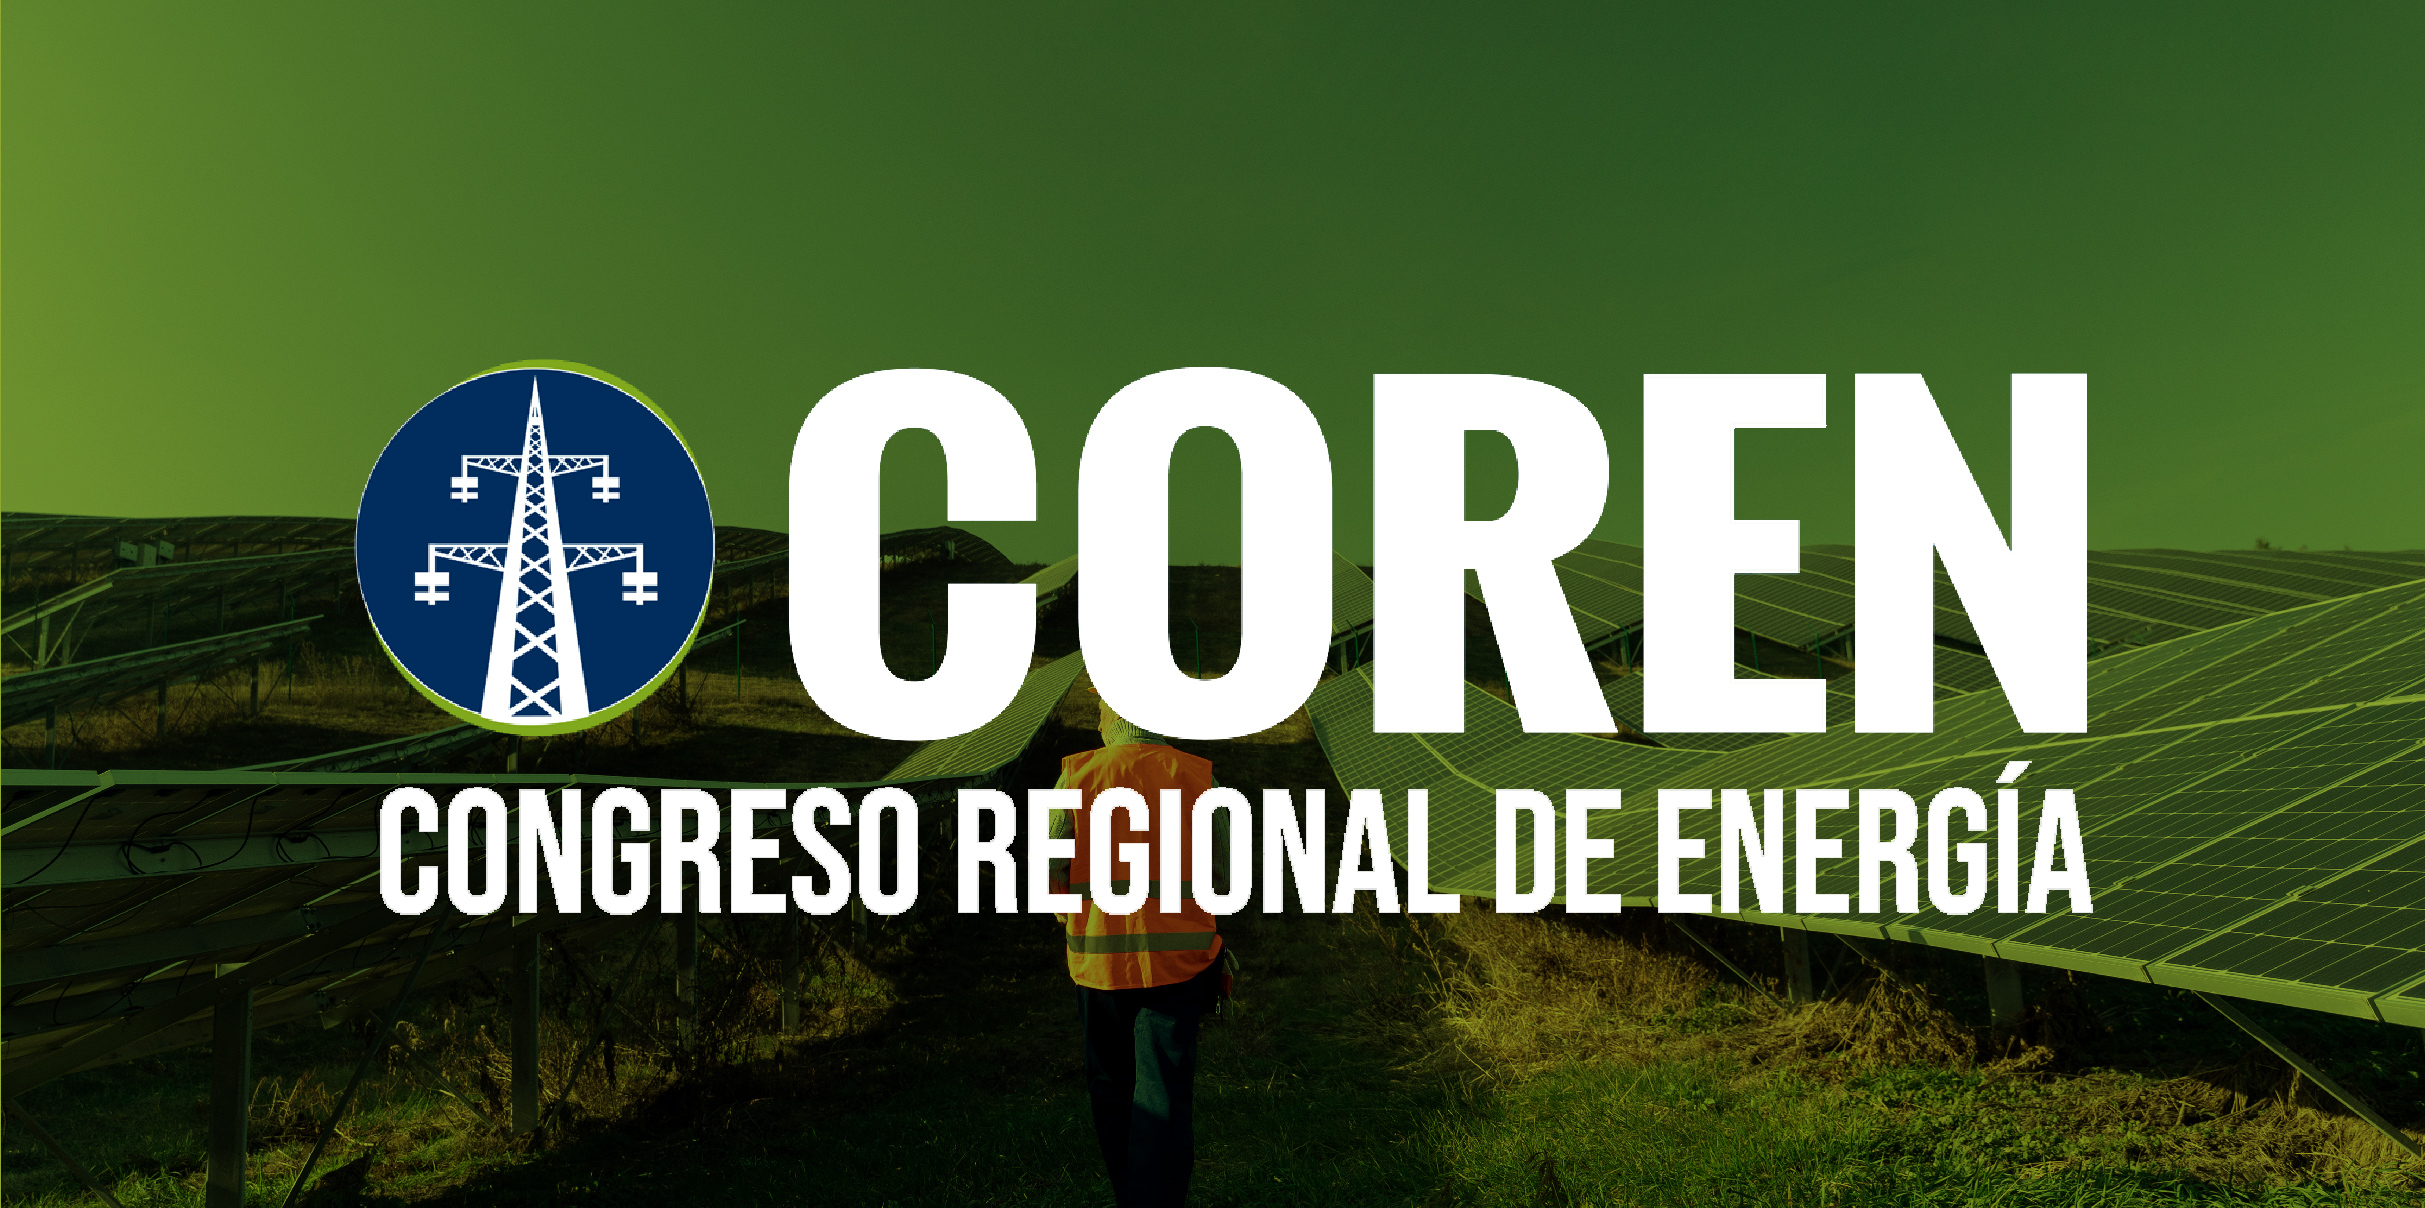 COREN: Congreso regional de energía